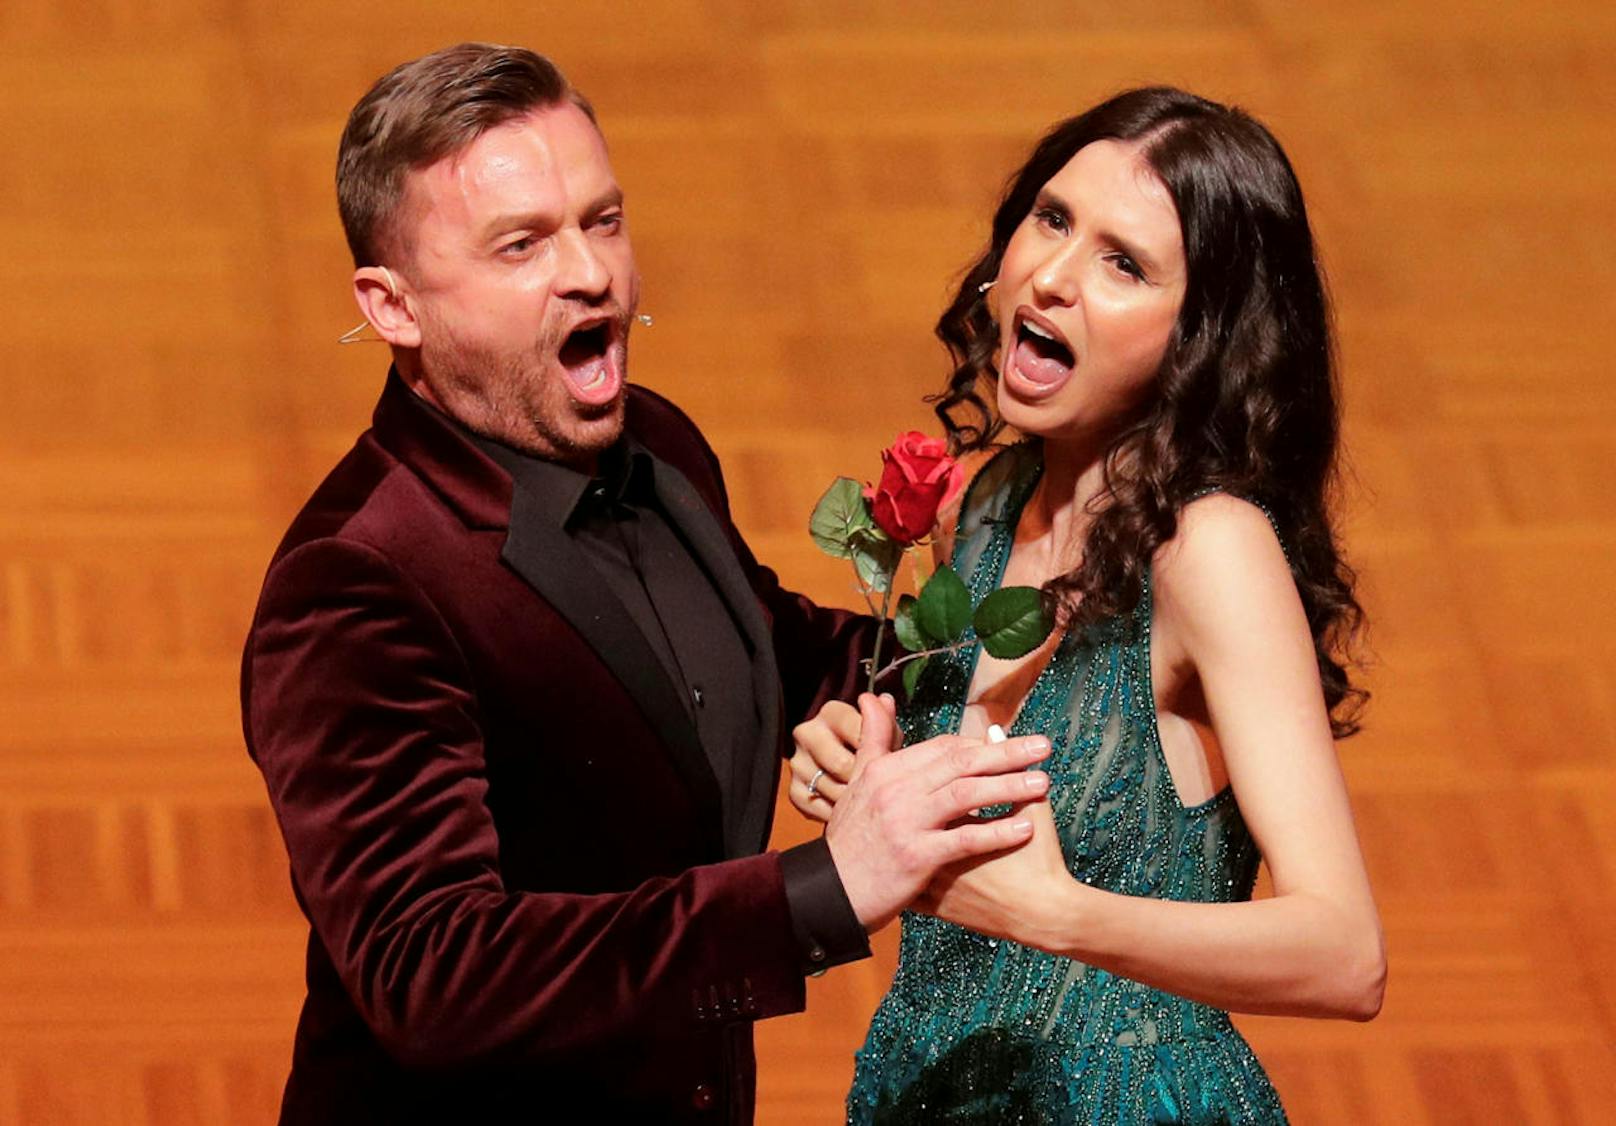  Der slowakische Tenor Pawol Breslik und die moldawische Sopranistin Valentina Nafornita sangen ein Duett aus Lehars "Die lustige Witwe"